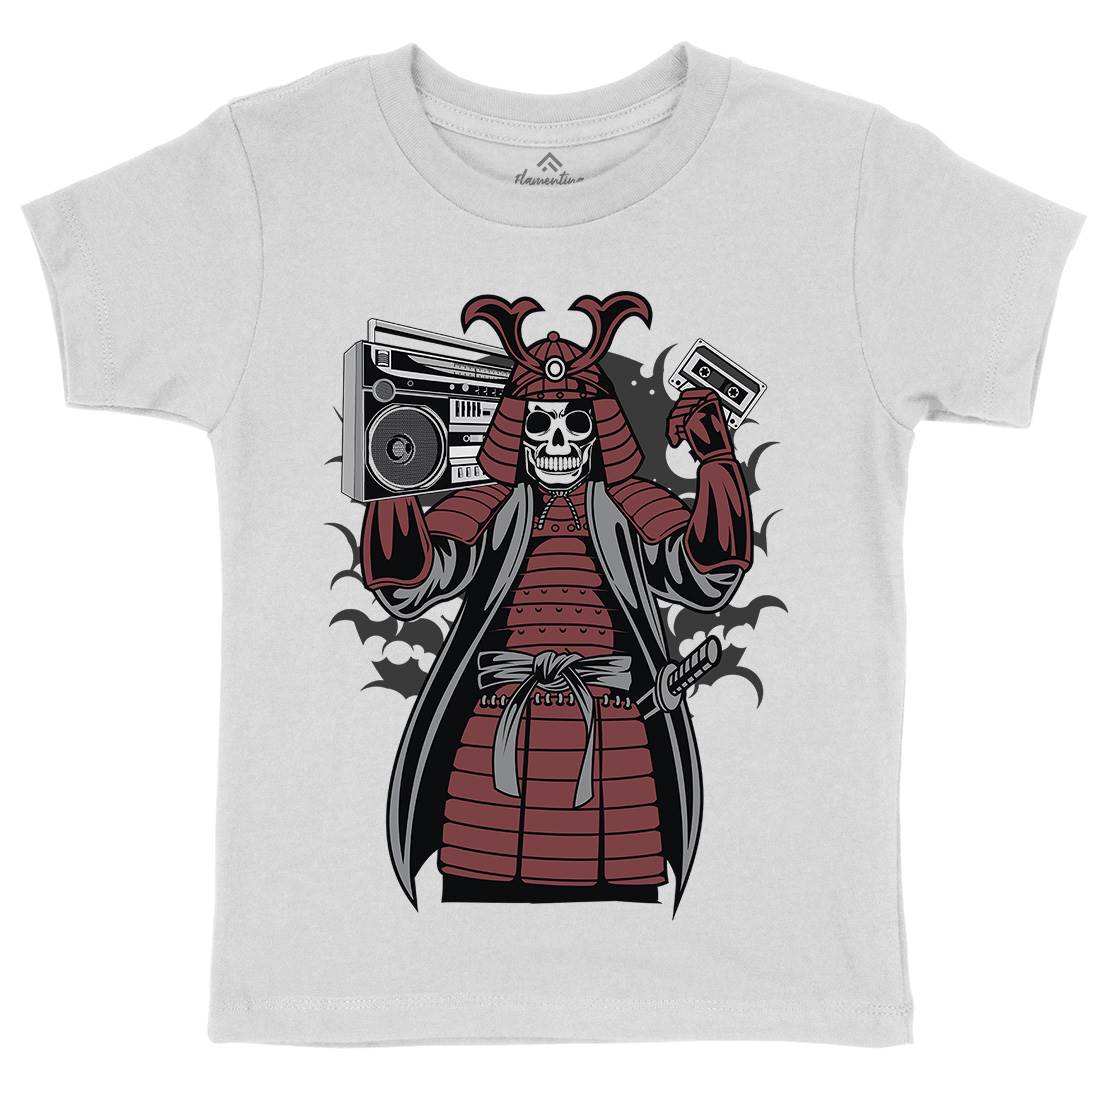 Samurai Boombox Kids Crew Neck T-Shirt Music C432